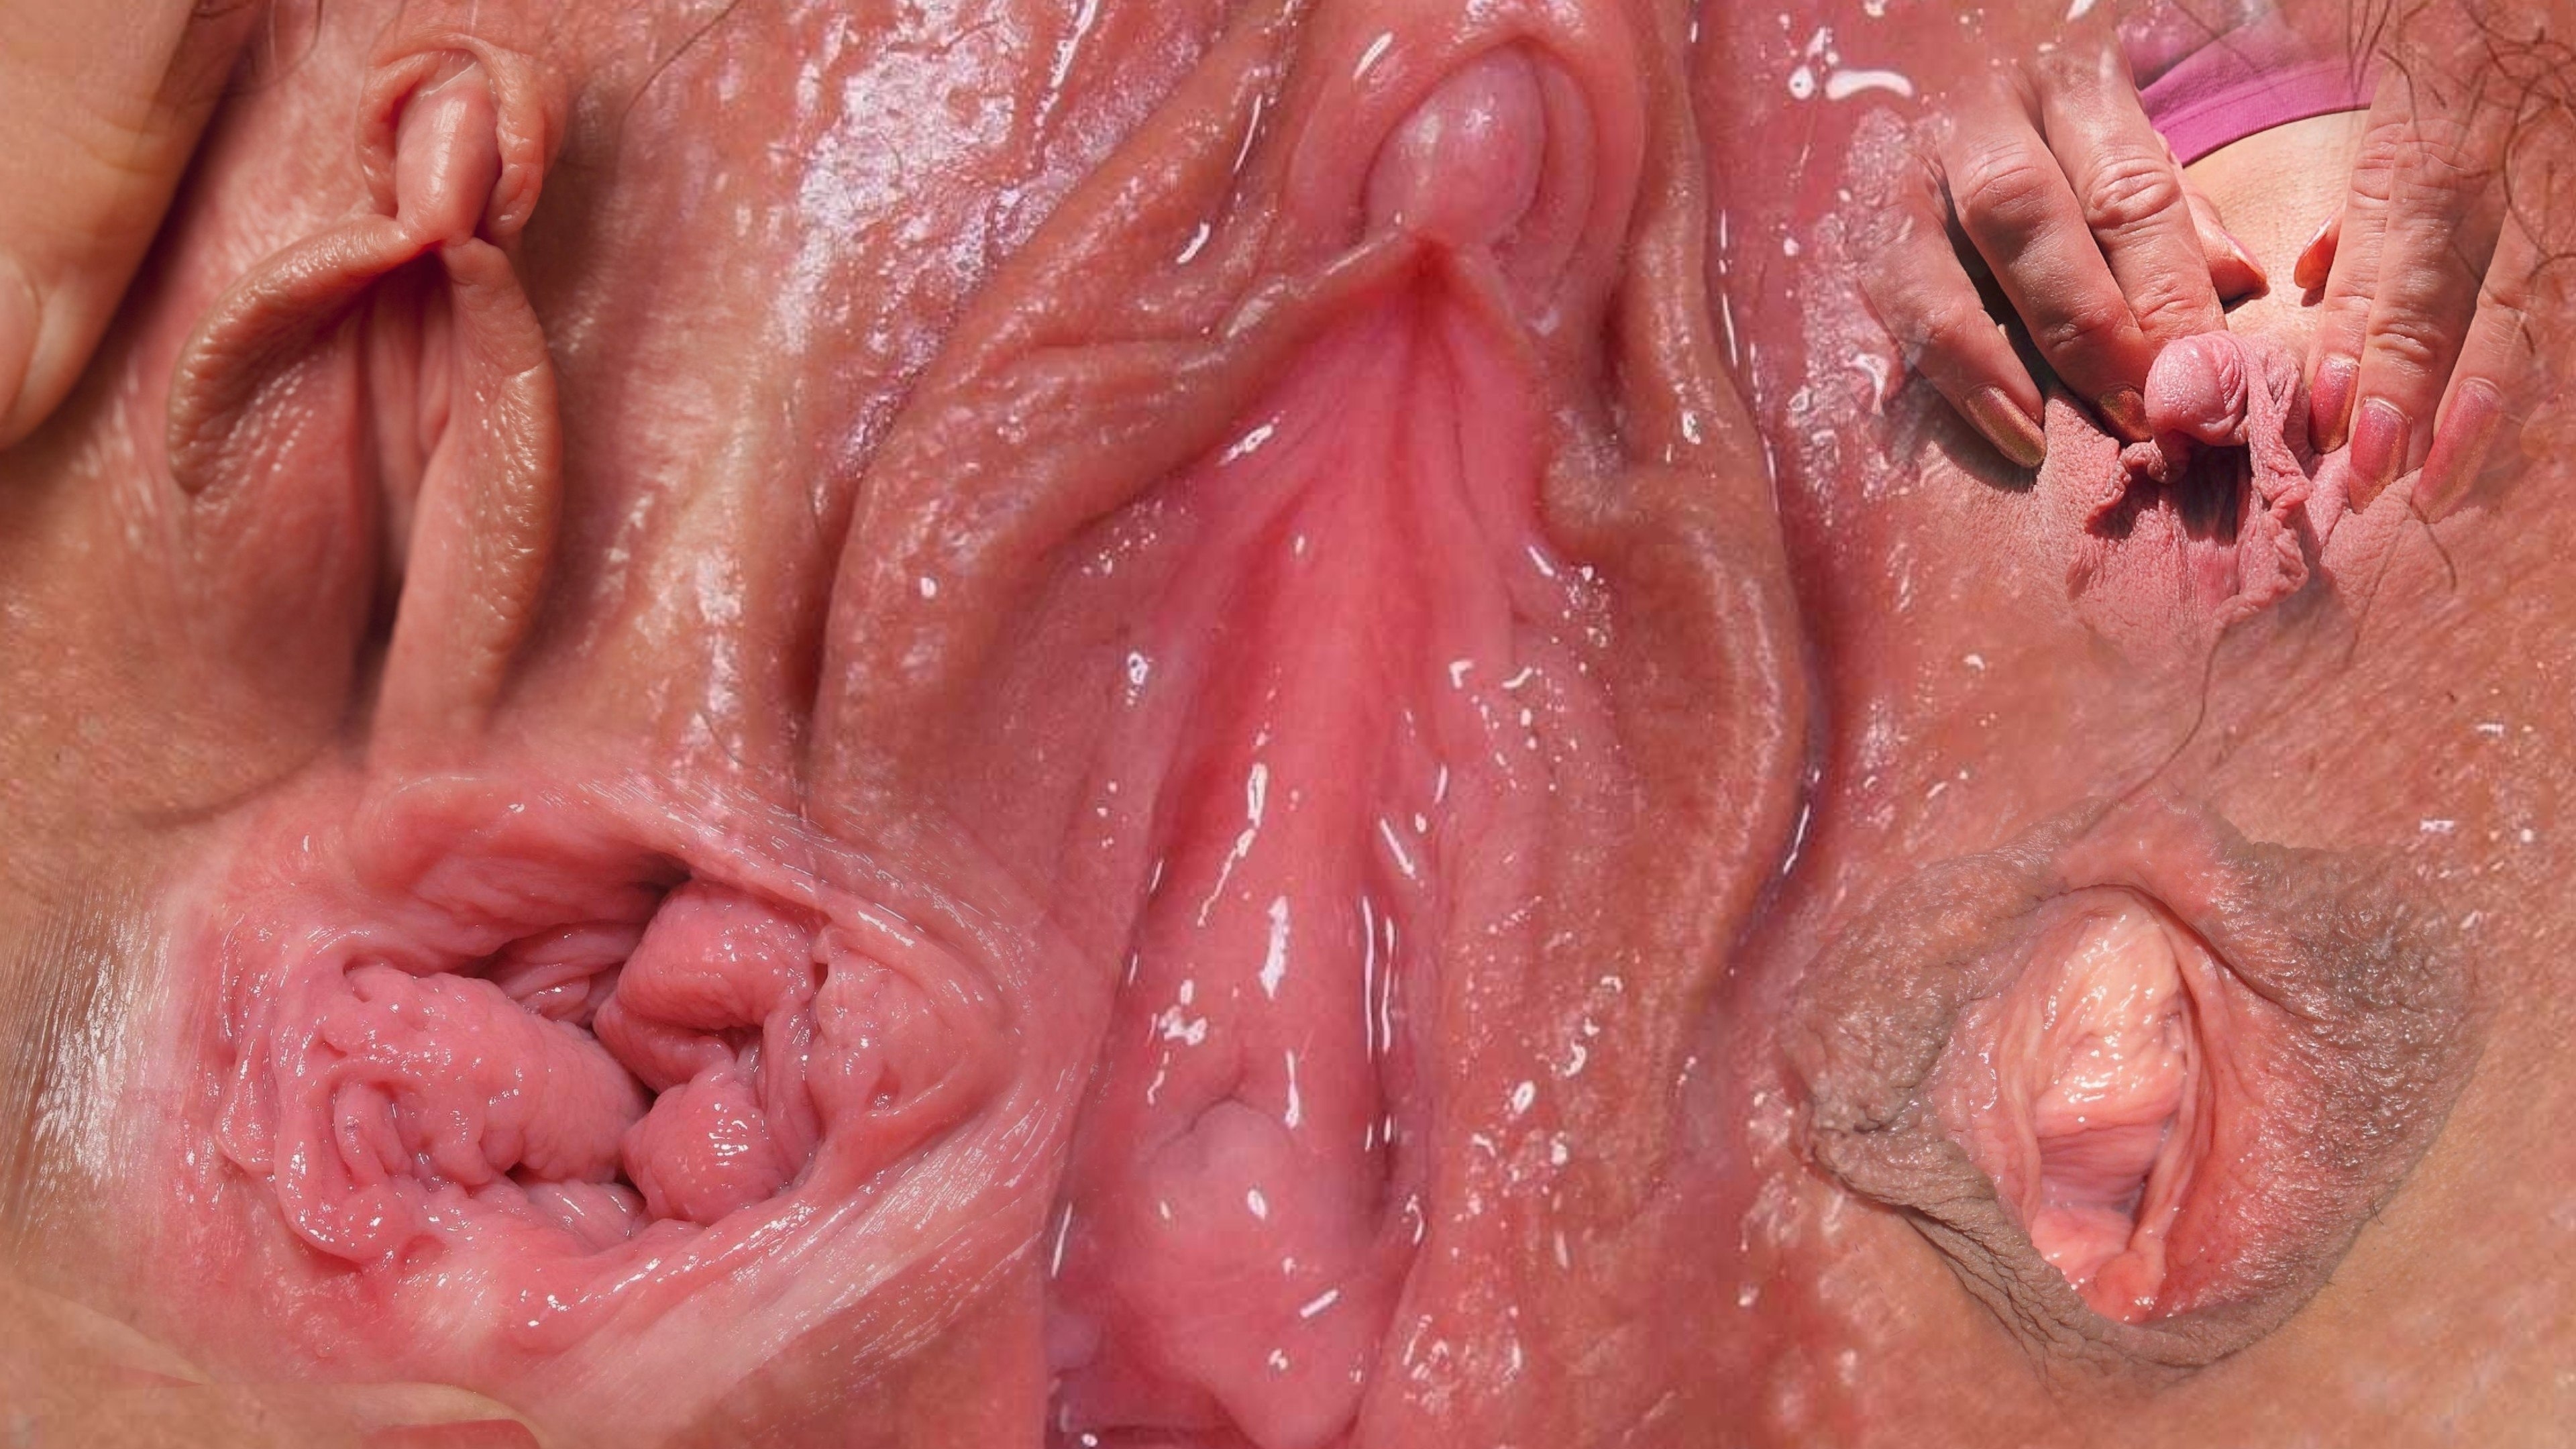 вагина из внутри порно фото 108